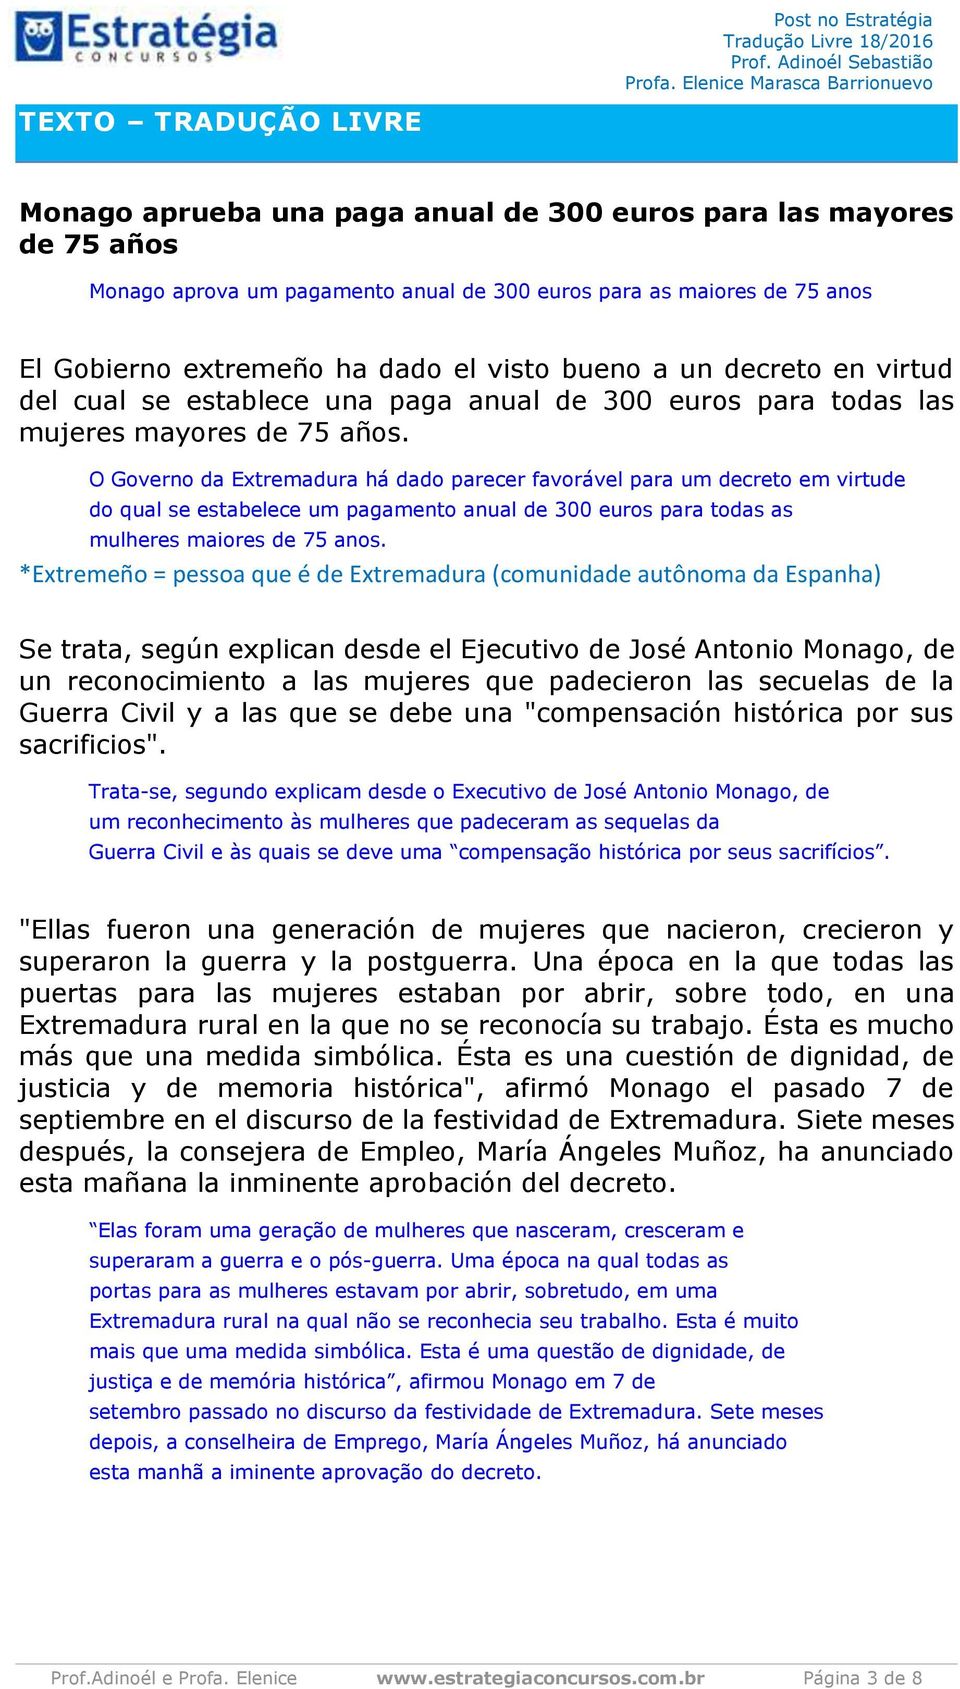 O Governo da Extremadura há dado parecer favorável para um decreto em virtude do qual se estabelece um pagamento anual de 300 euros para todas as mulheres maiores de 75 anos.